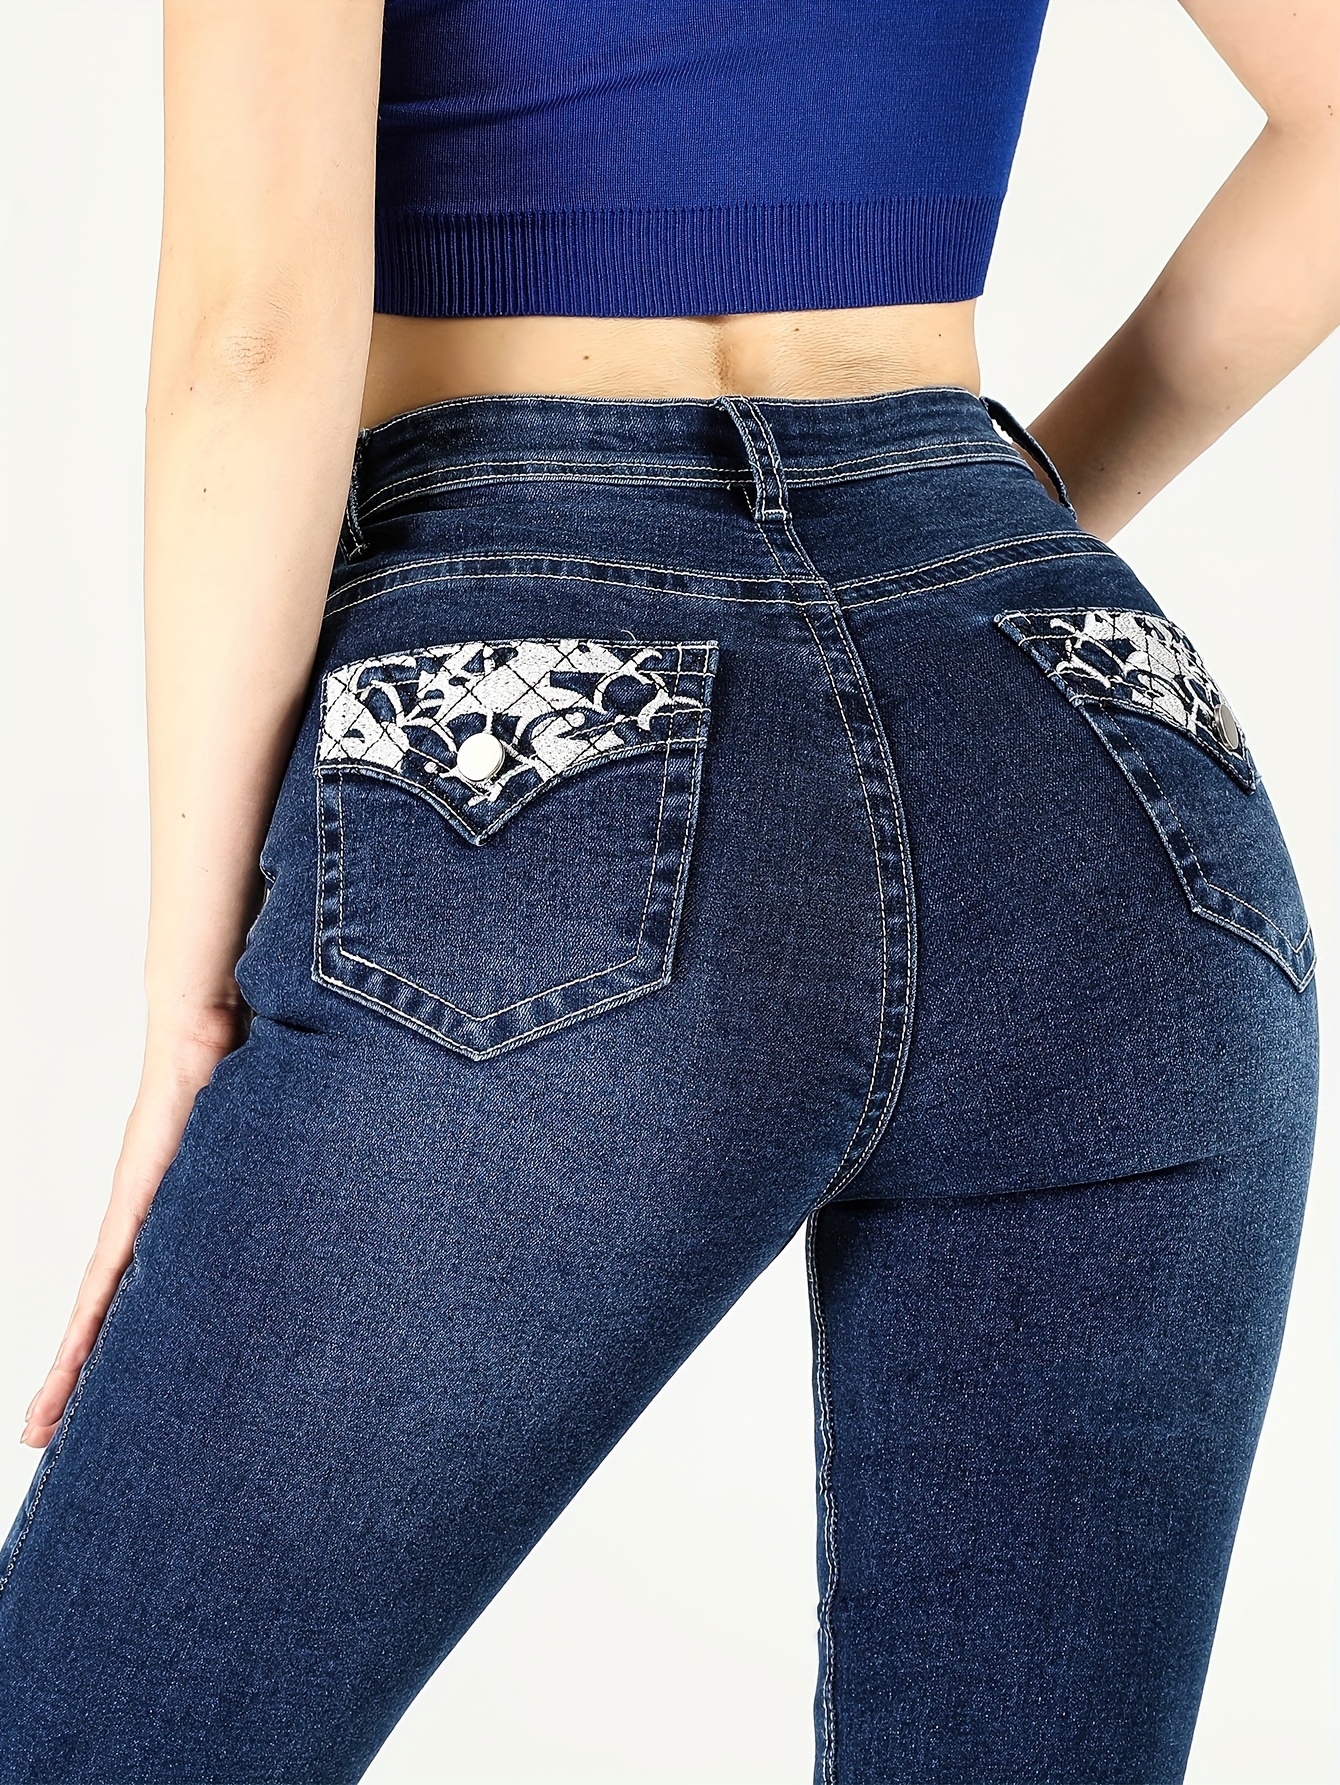 Black Flap Pockets Bootcut Jeans, Double Button High Stretch Denim Pants,  Women's Denim Jeans & Clothing